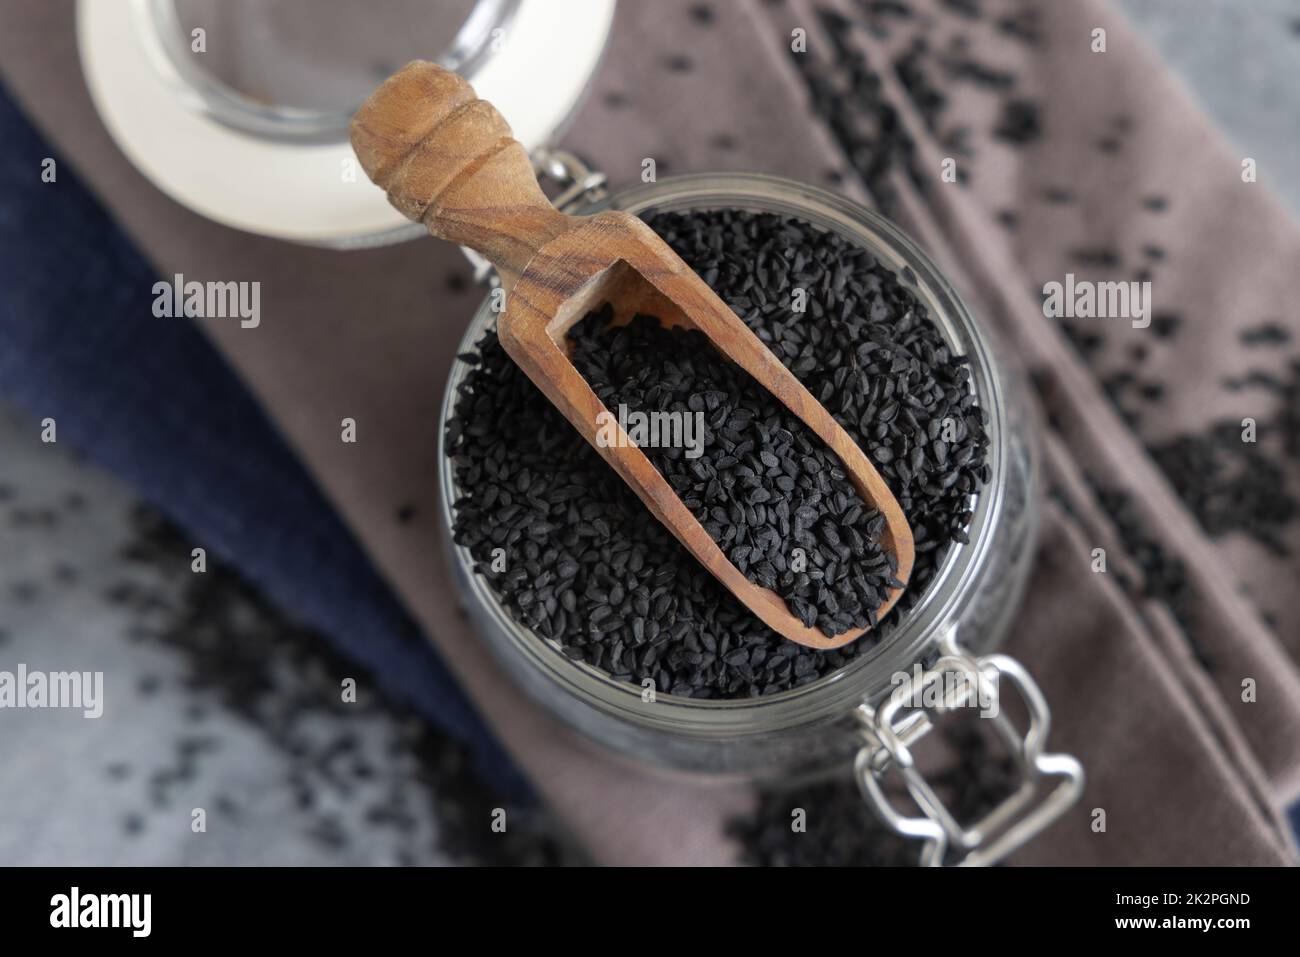 Épices indiennes graines de cumin noir (nigella sativa ou kalonji) dans un pot en verre avec vue sur le dessus de la pelle en bois Banque D'Images